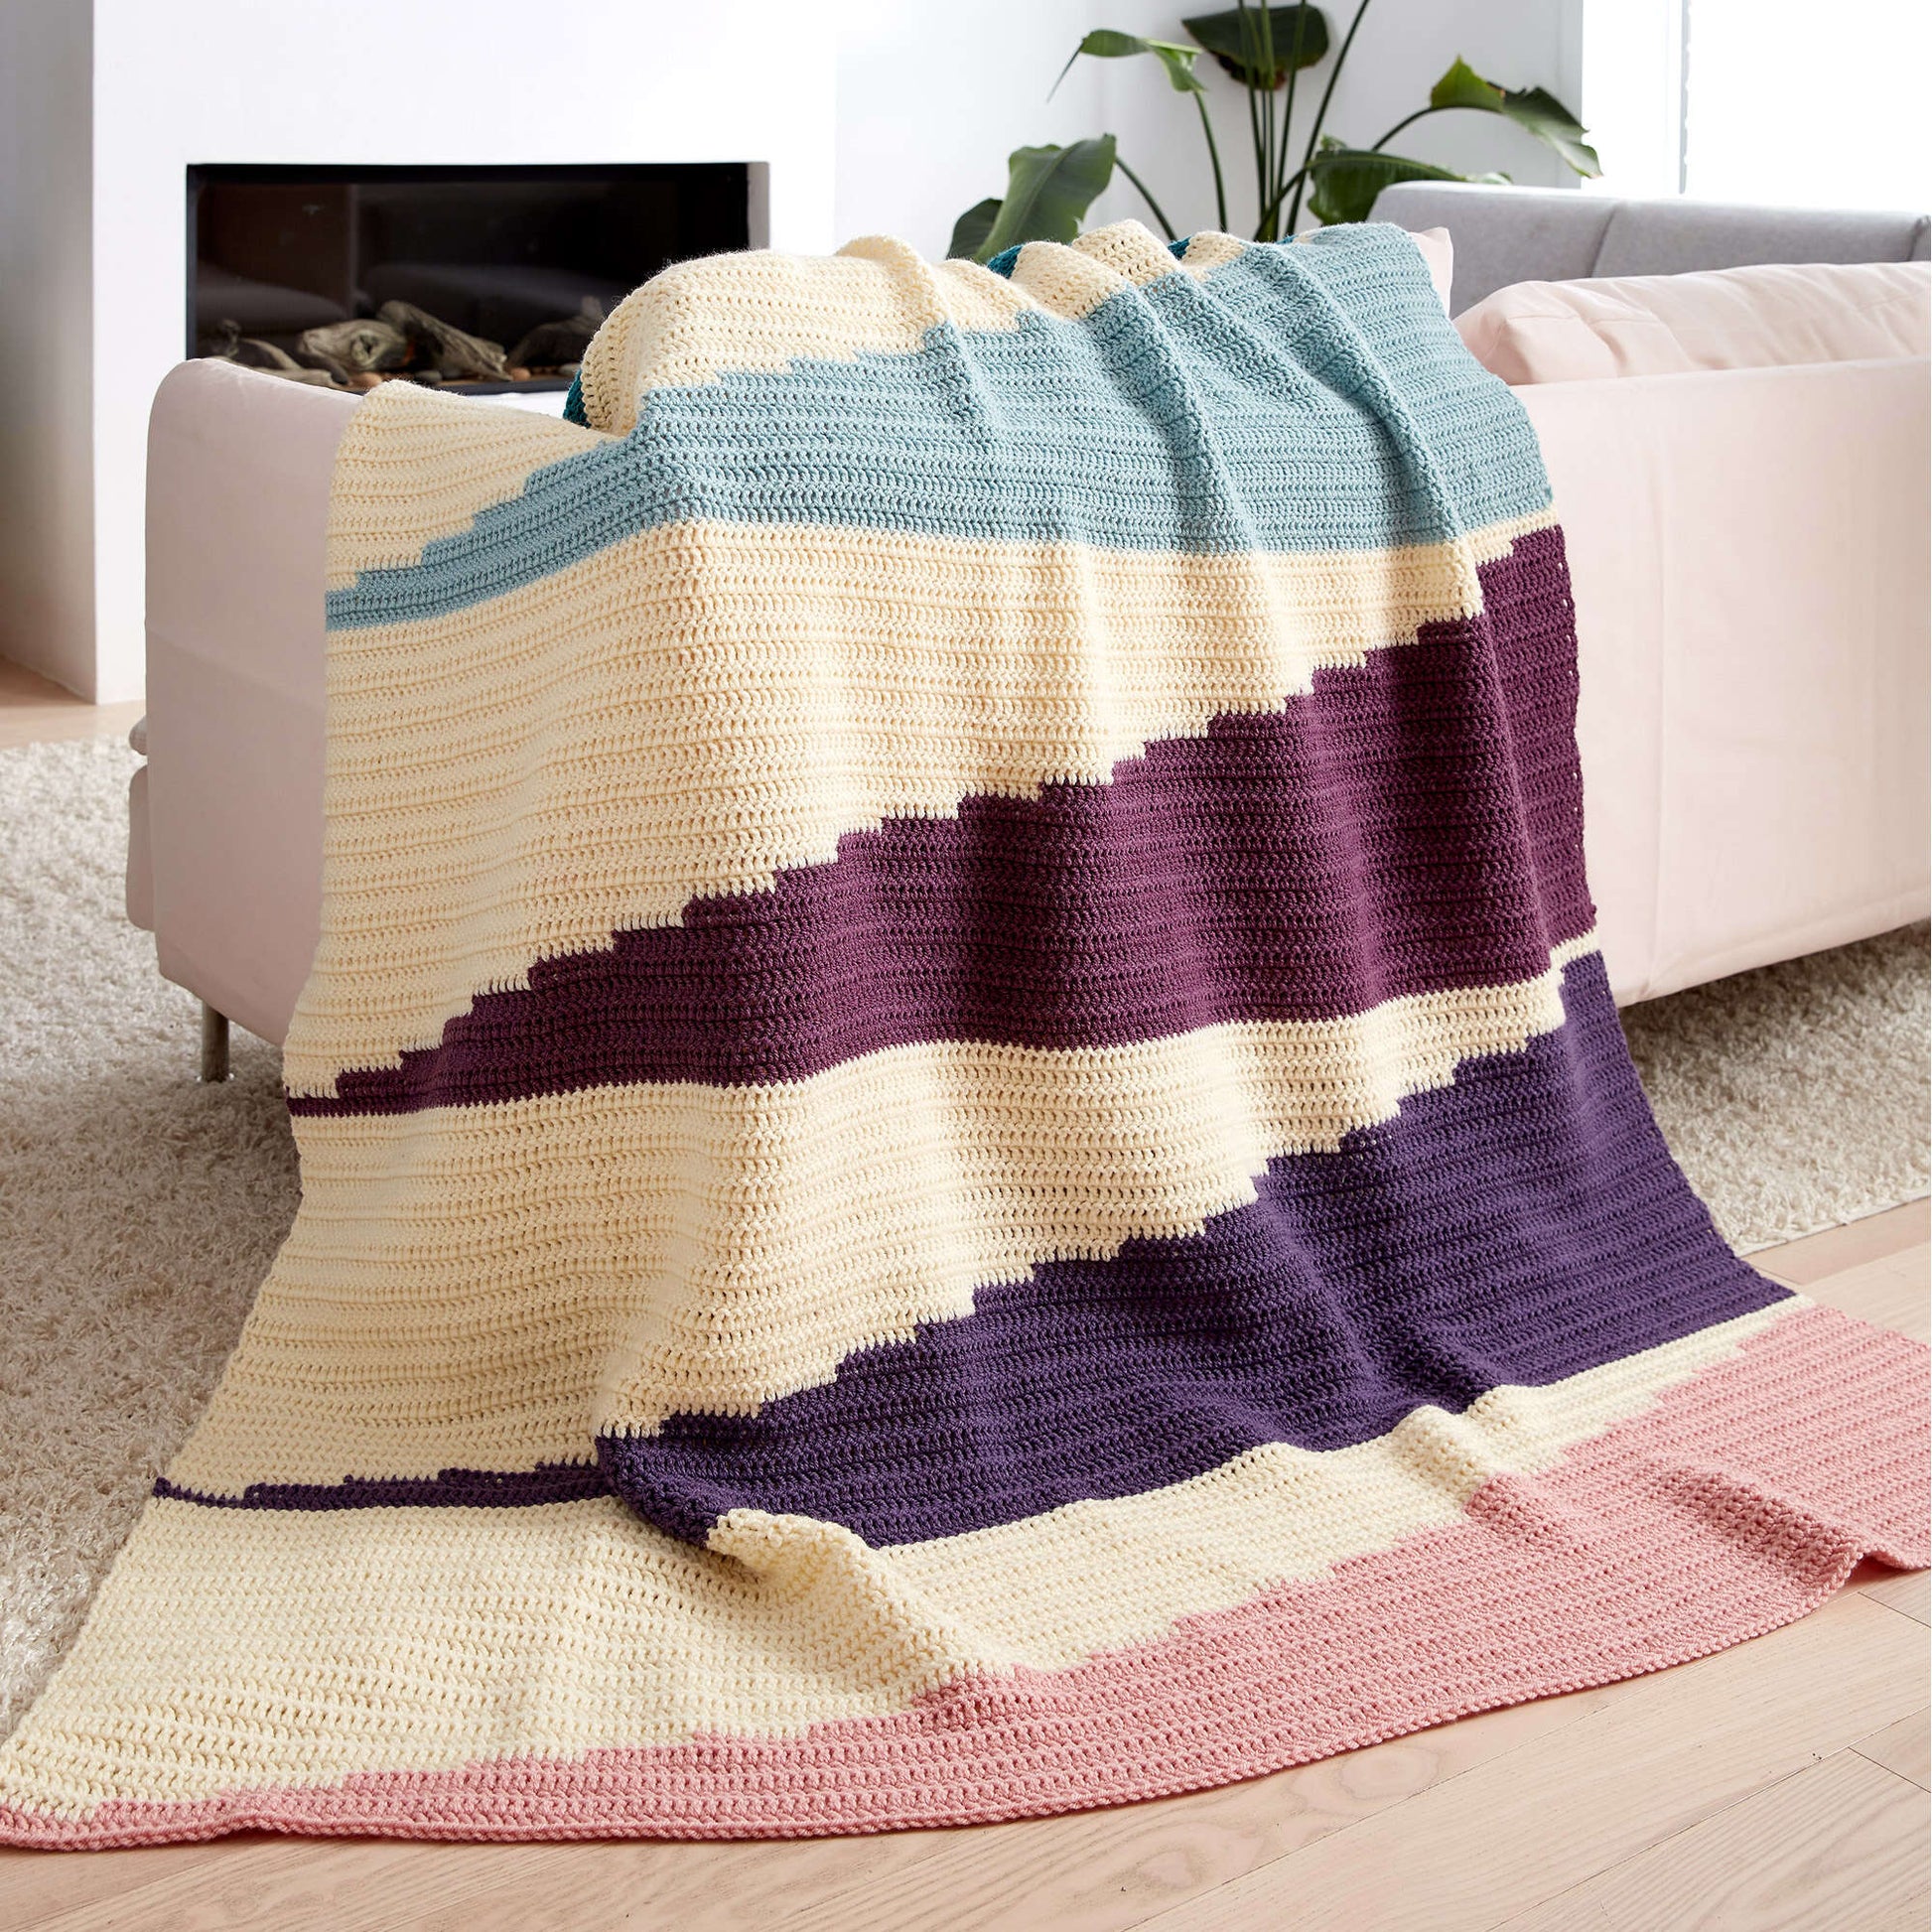 Free Patons Wedge It Crochet Blanket Pattern